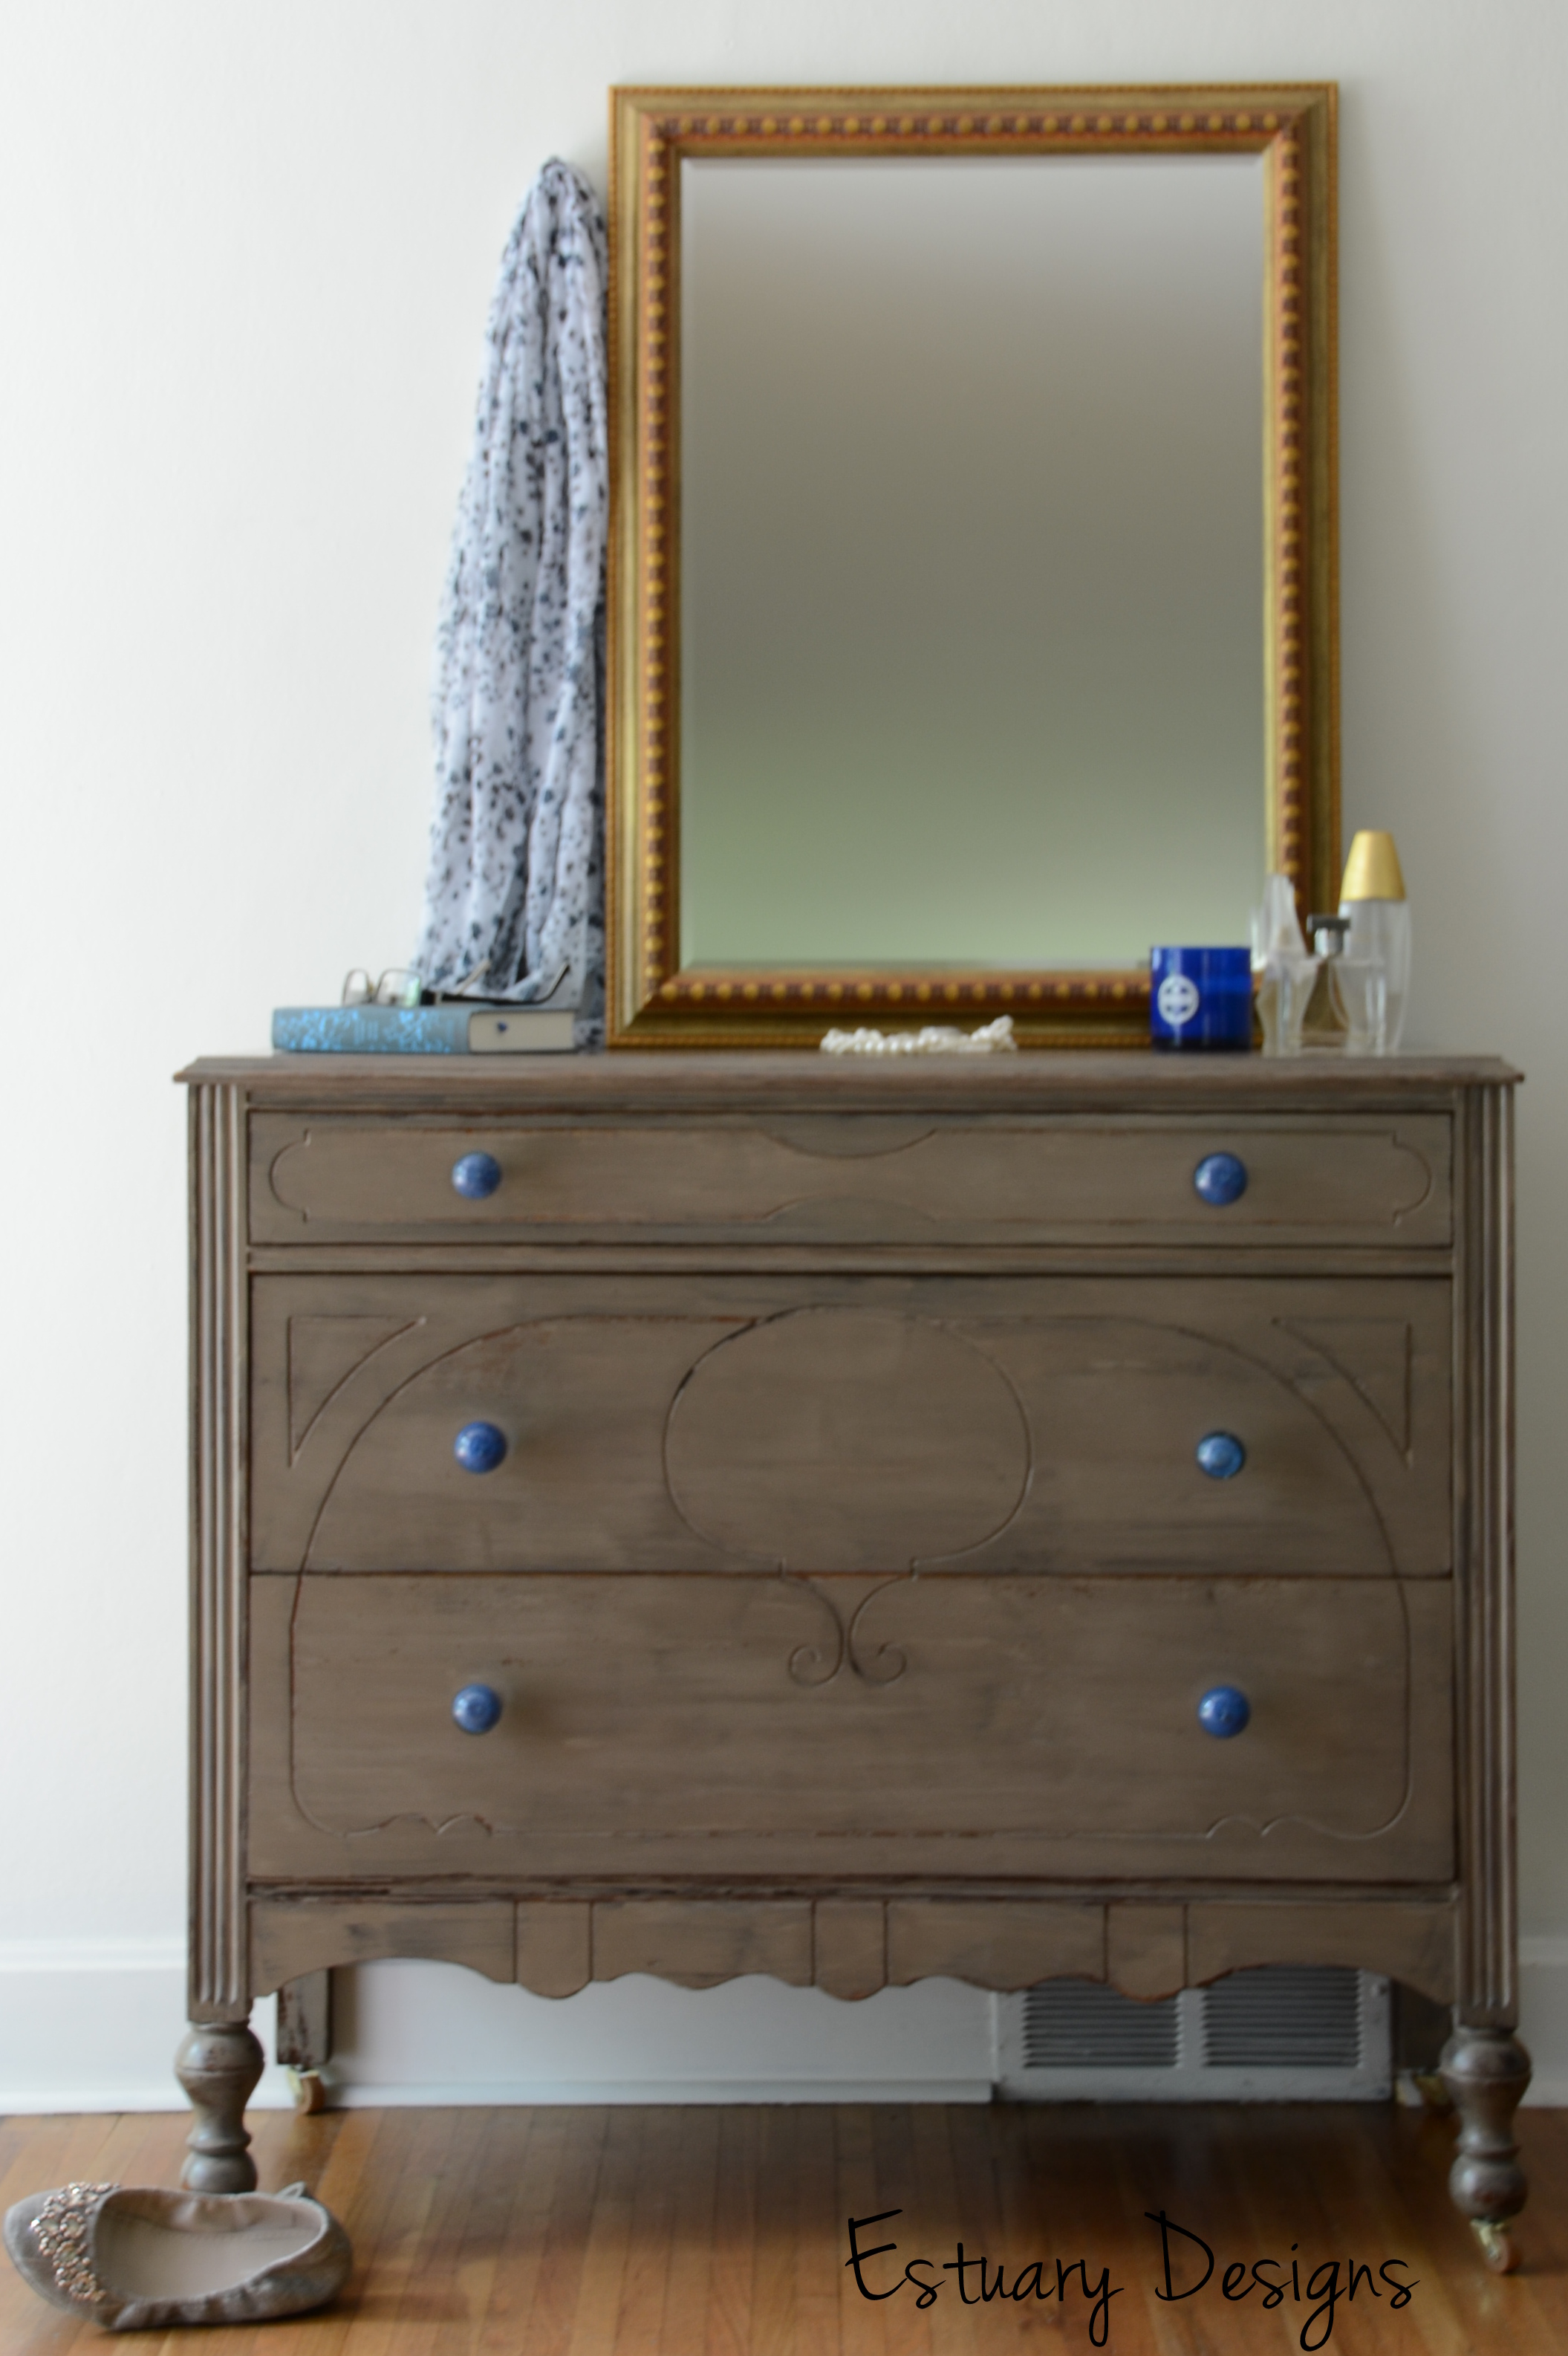 A Driftwood Esque Dresser With Blue Glass Knobs Estuary Designs